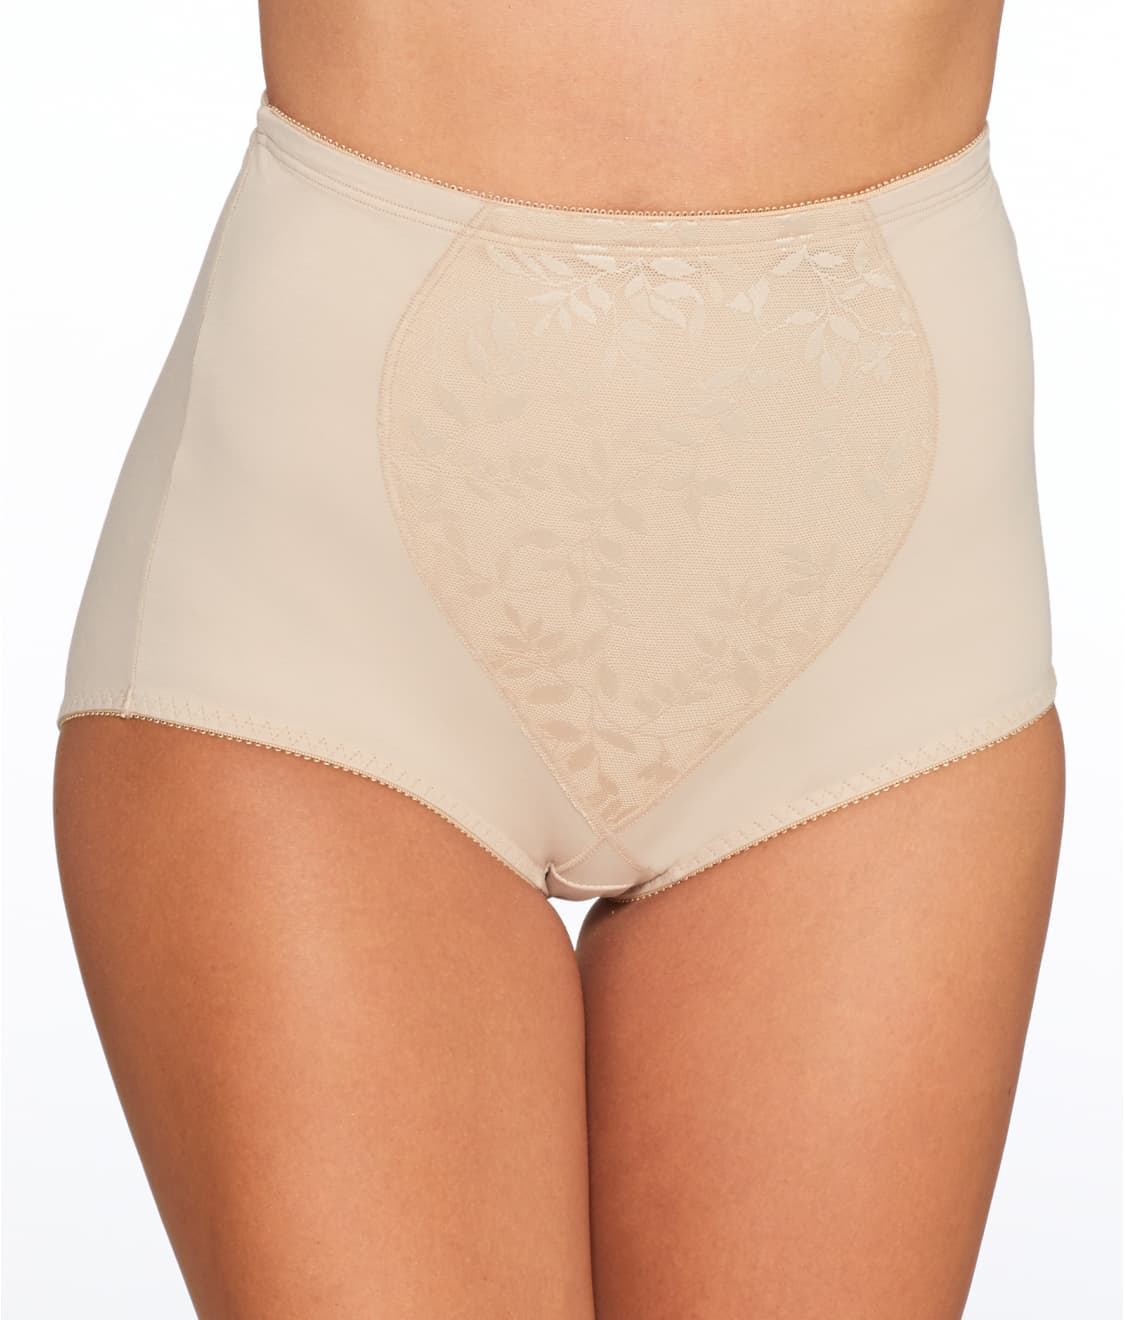 Women's Extra Firm Tummy-Control Seamless Brief Underwear 2 Pack